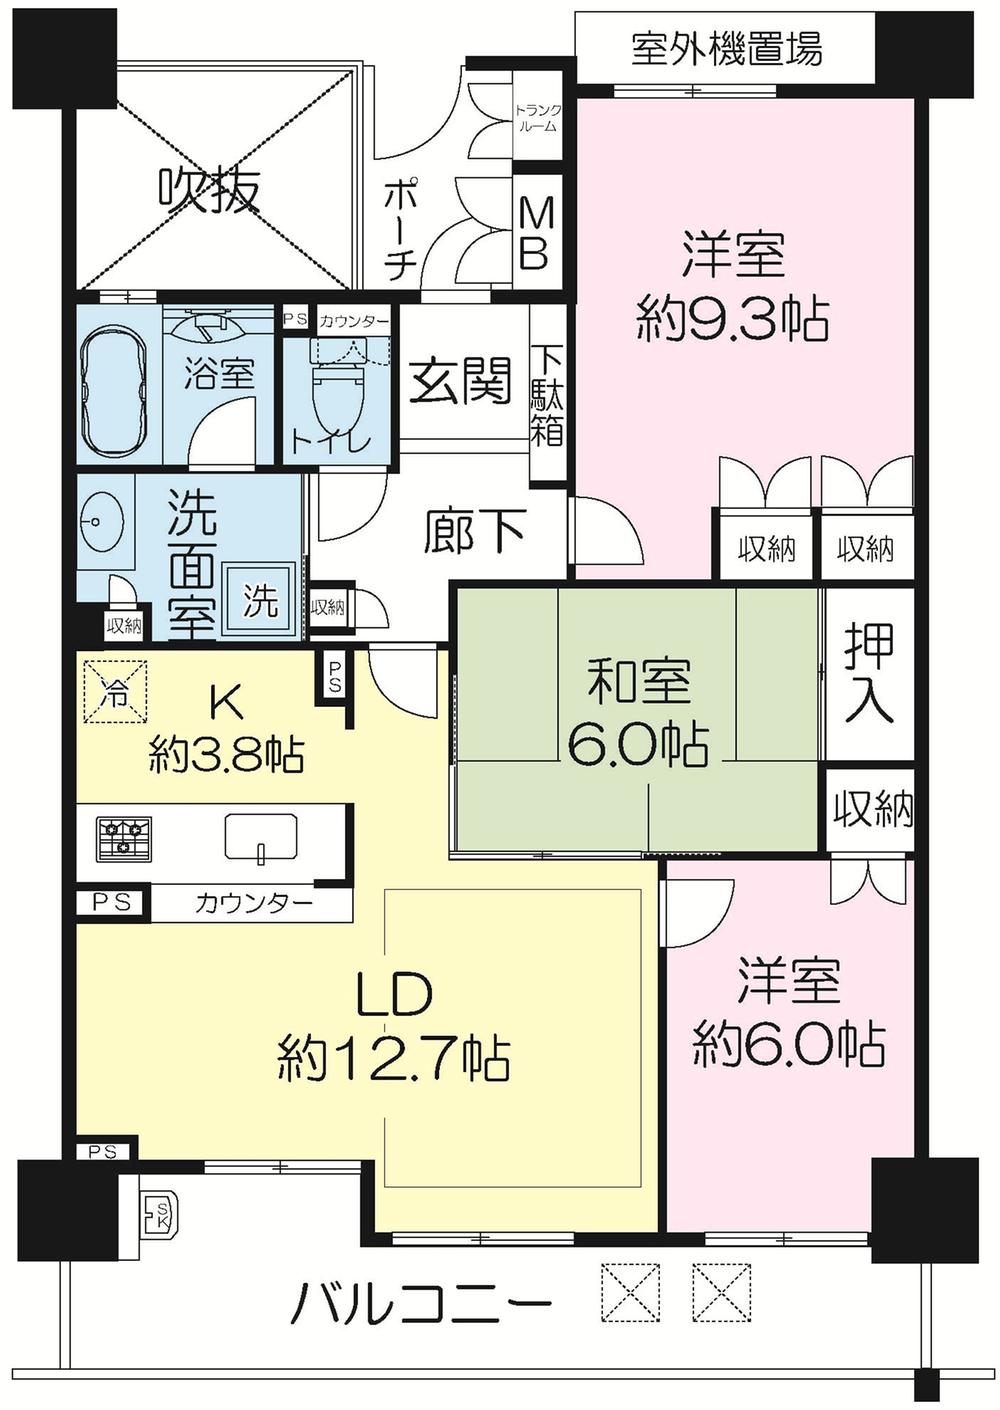 Floor plan. 3LDK, Price 23,900,000 yen, Occupied area 82.67 sq m , Balcony area 12.95 sq m LDK about 16.5 Joyu ・ Floor Heating Yes (living area)